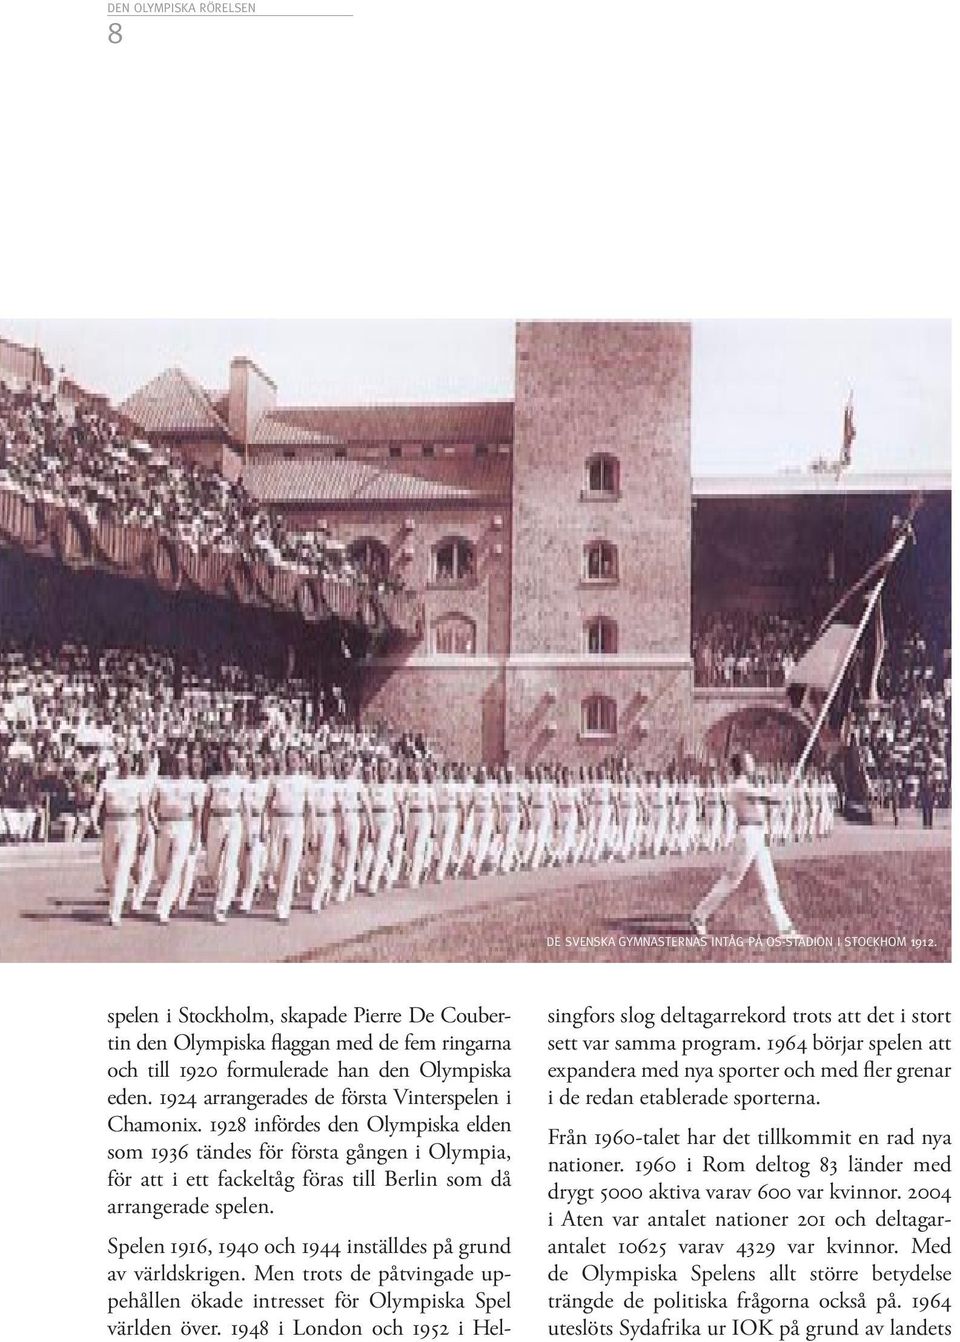 1928 infördes den Olympiska elden som 1936 tändes för första gången i Olympia, för att i ett fackeltåg föras till Berlin som då arrangerade spelen.